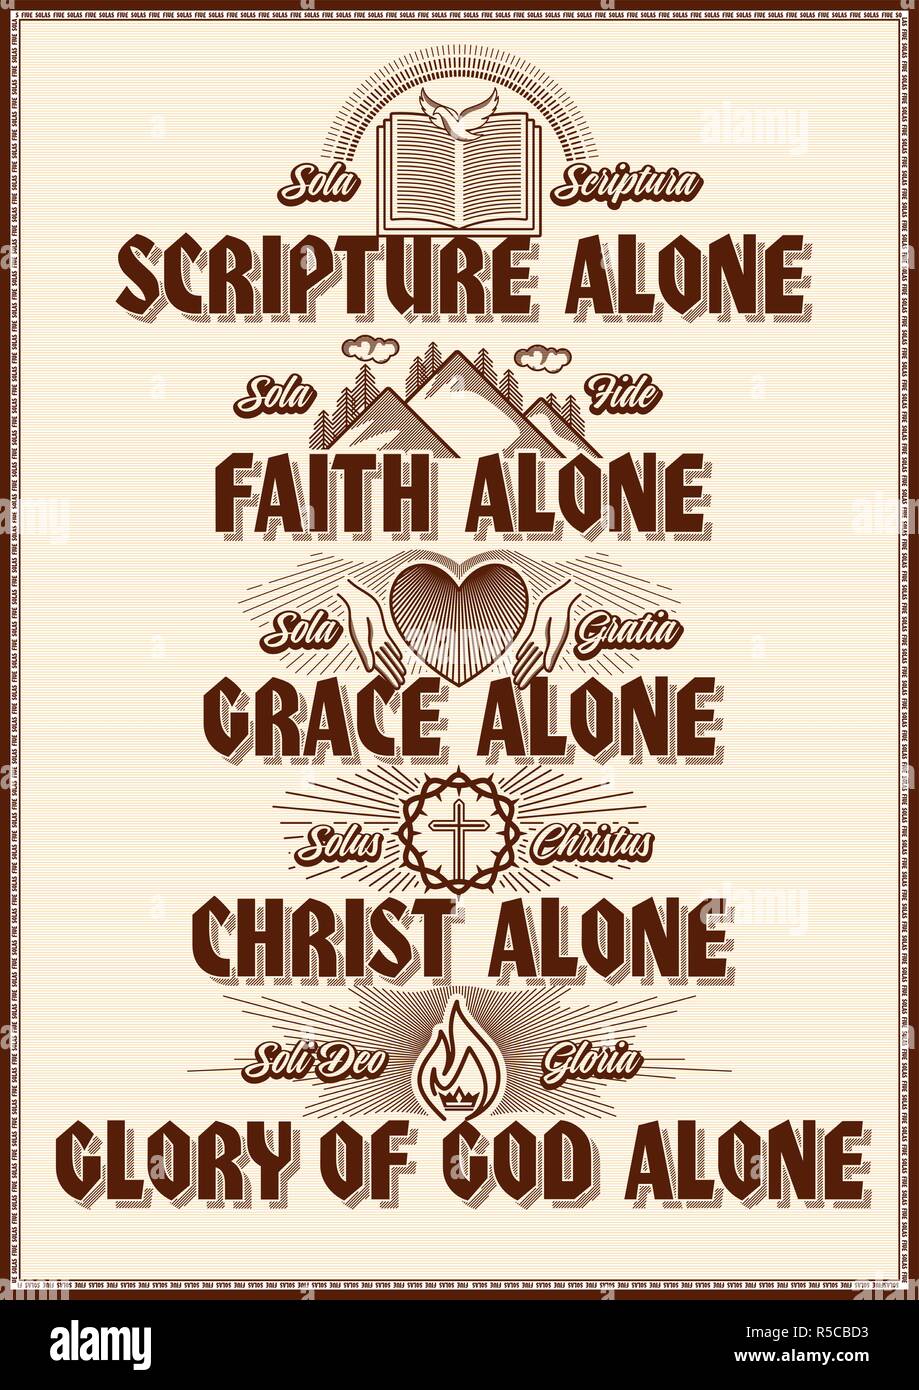 Sola gratia sola scriptura sola fide